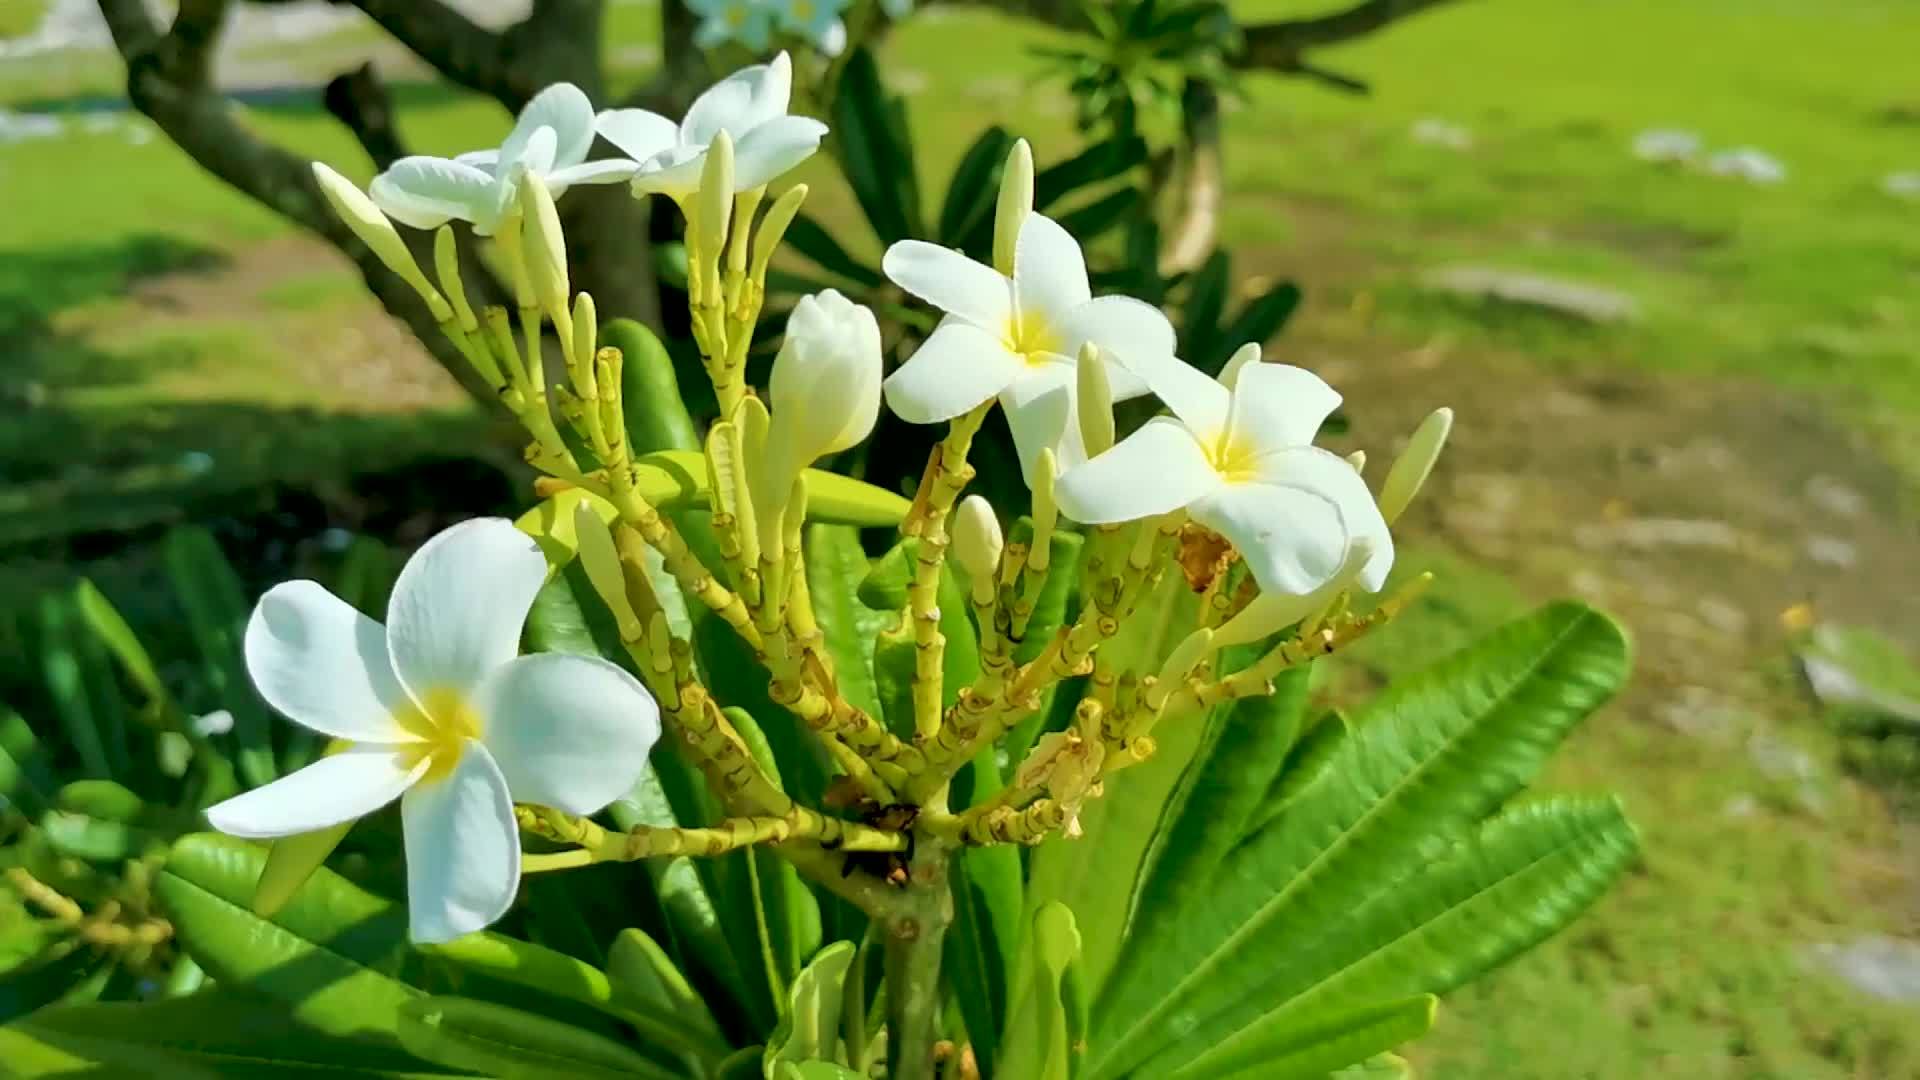 arbusto de plumeria con flores blancas y amarillas en méxico. 11958539  Vídeo de stock en Vecteezy